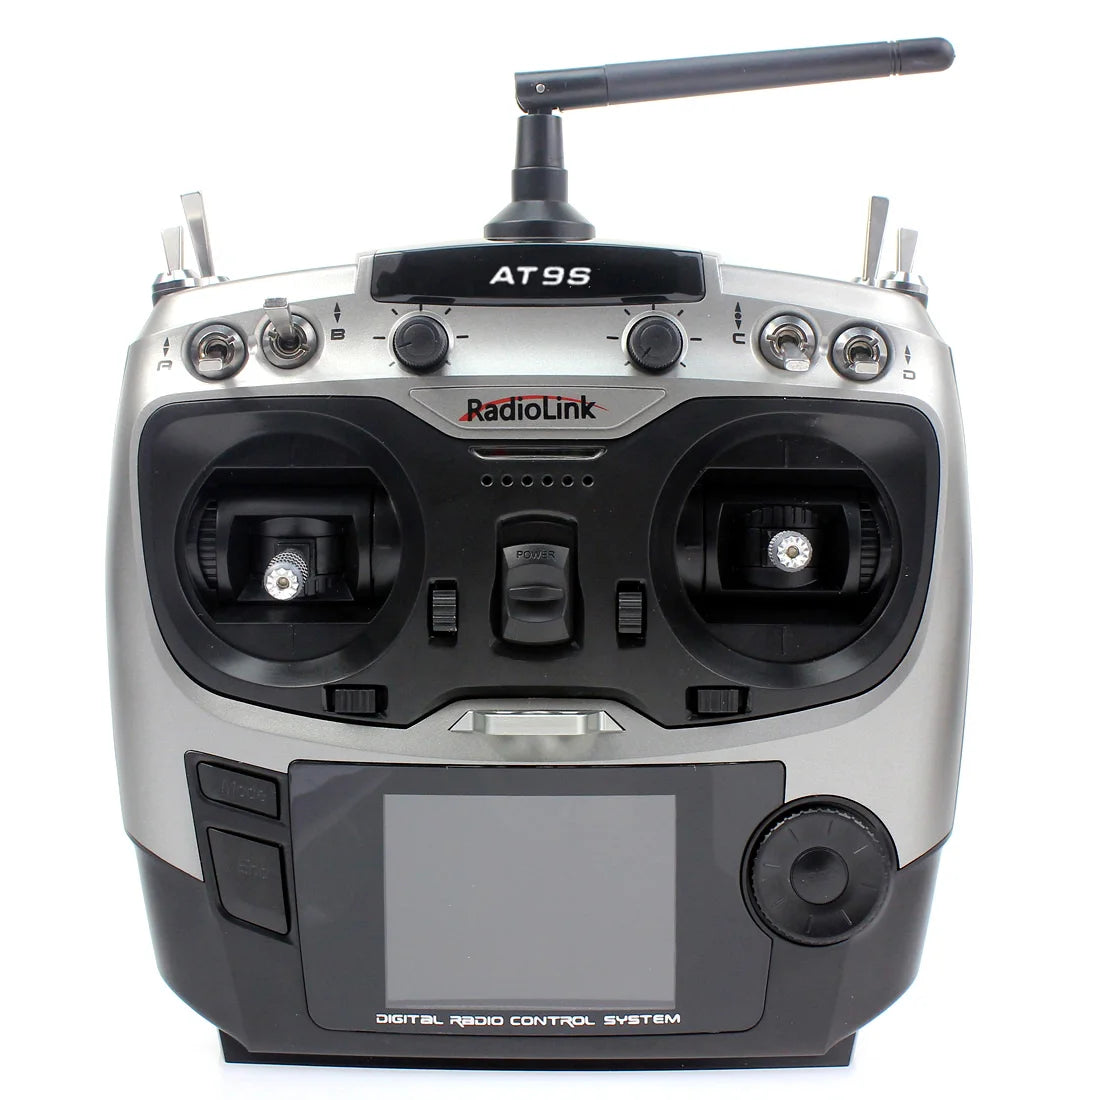 DIY RC FPV Drone, At9s RadioLink 3 DigiTaL RADIO CONTROL SYSTEM